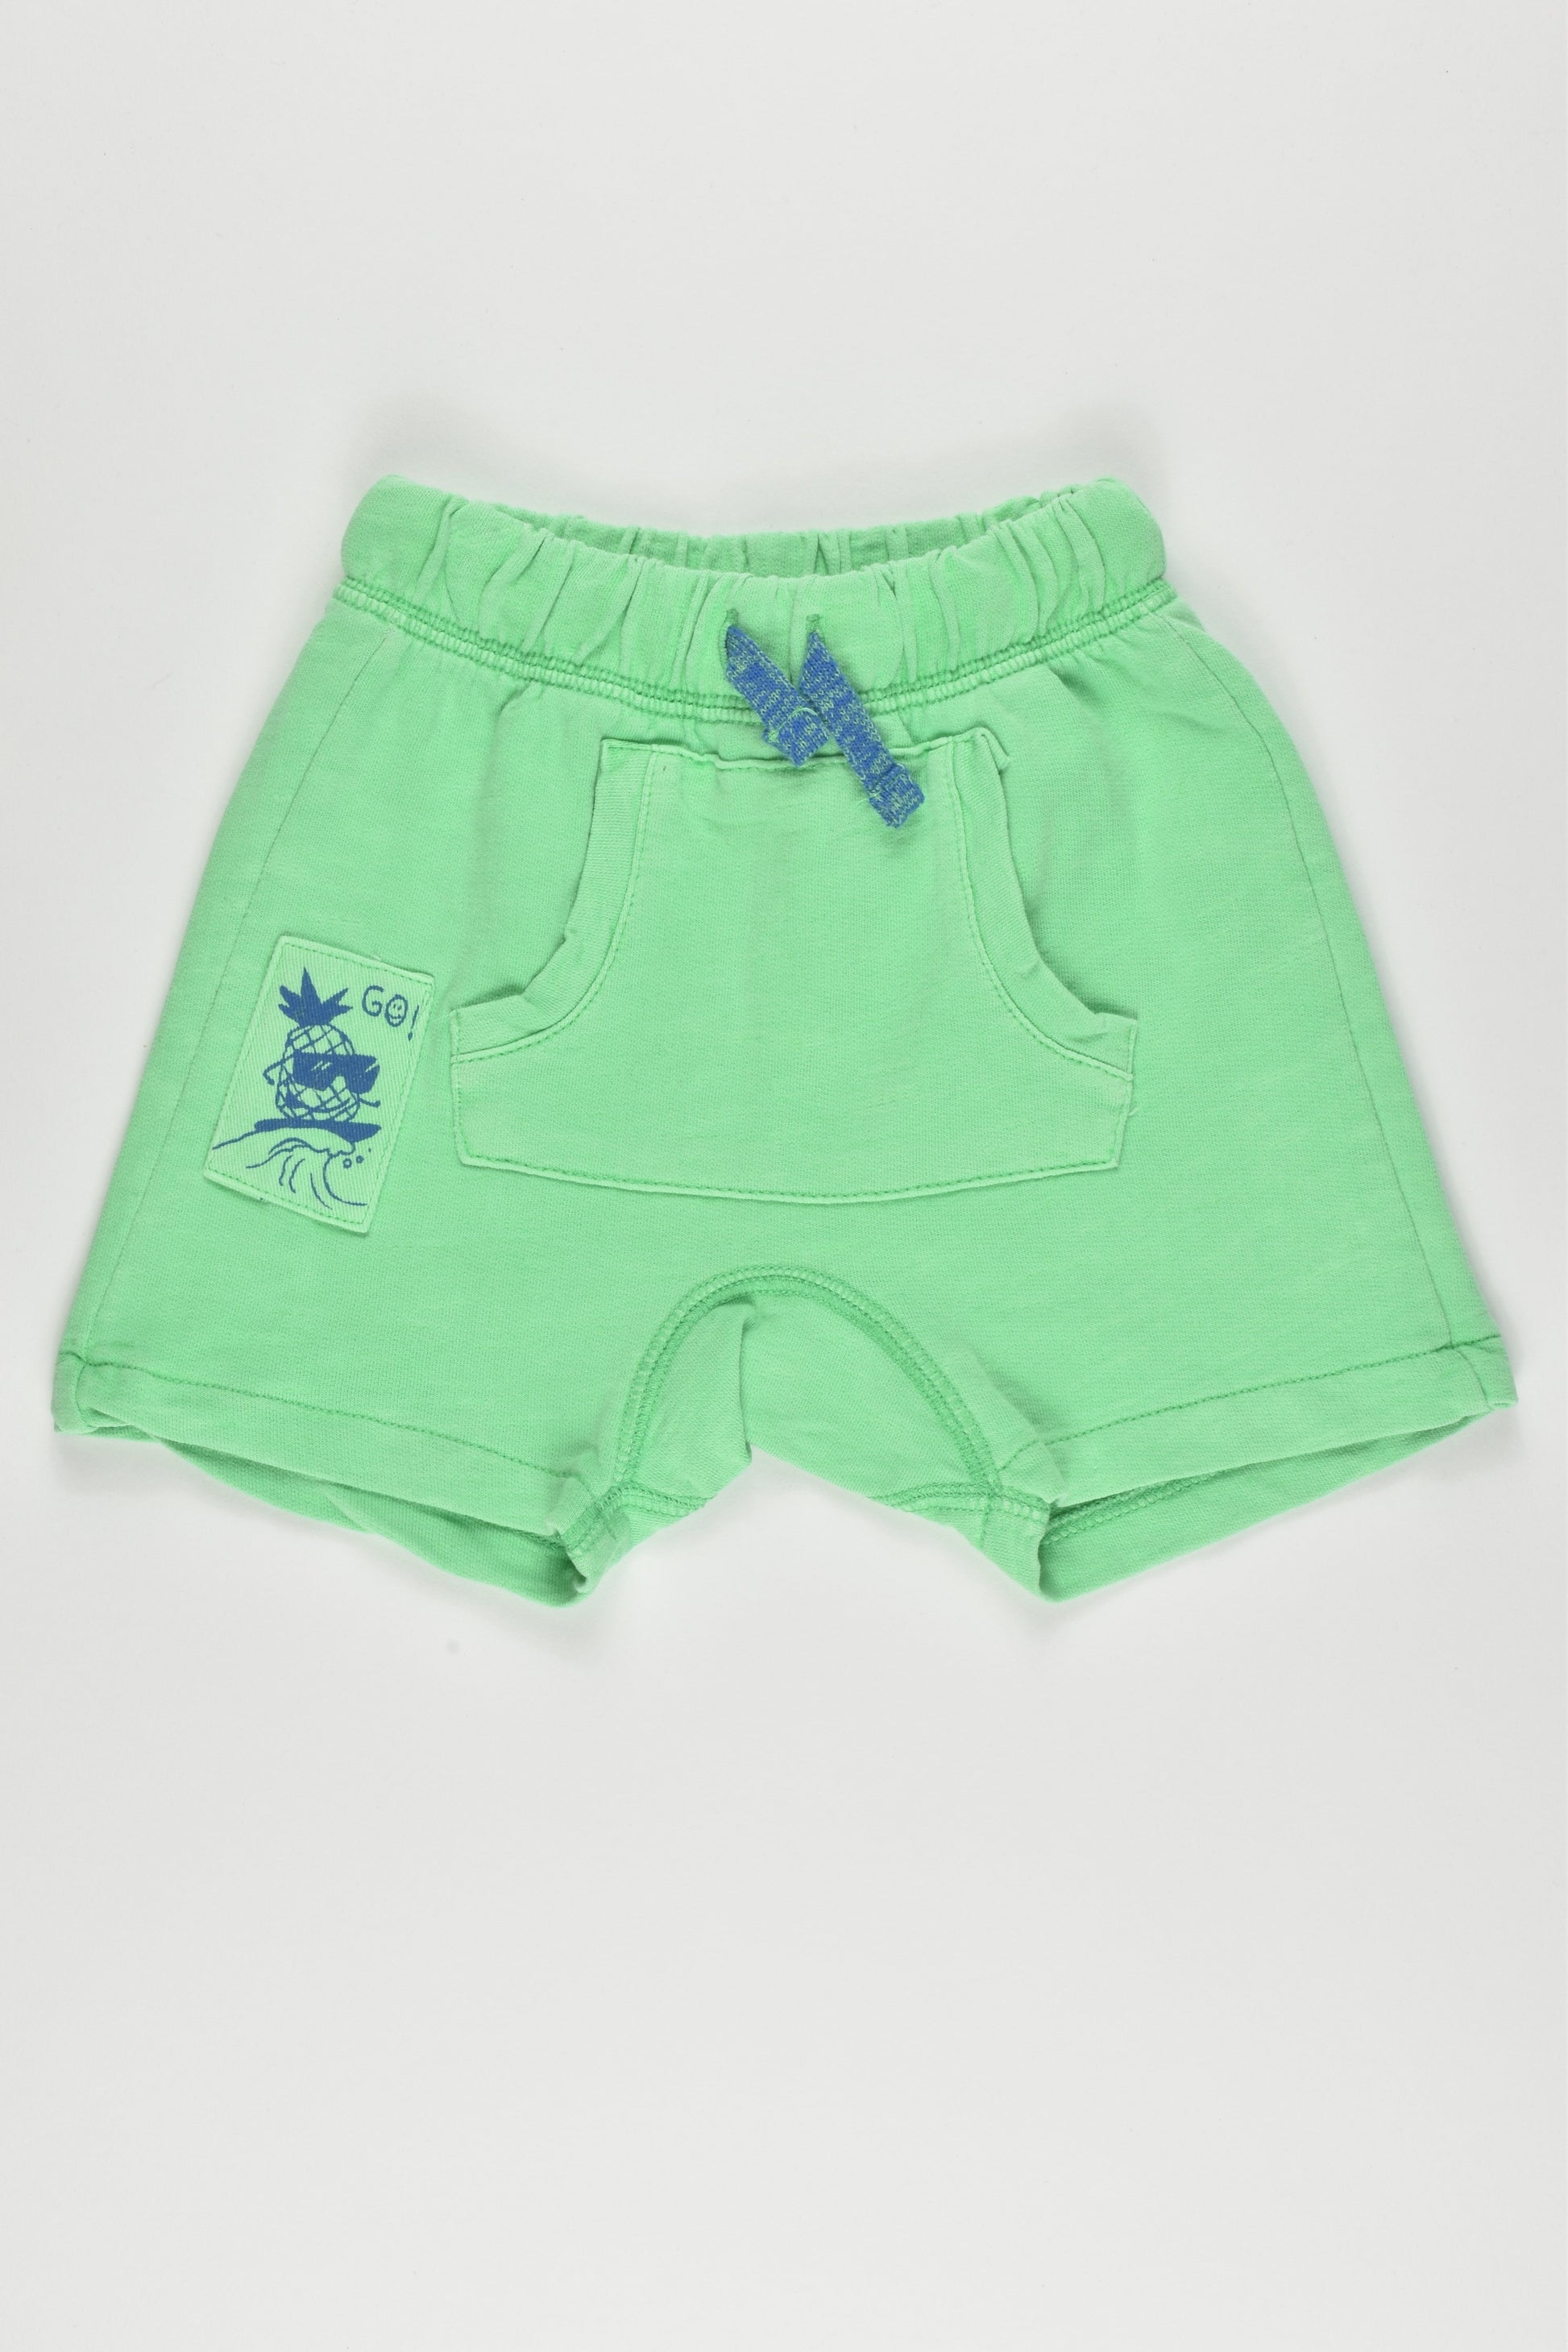 Zara Baby Boy Size 00 (3-6 months, 68 cm) Surfing Pineapple Shorts